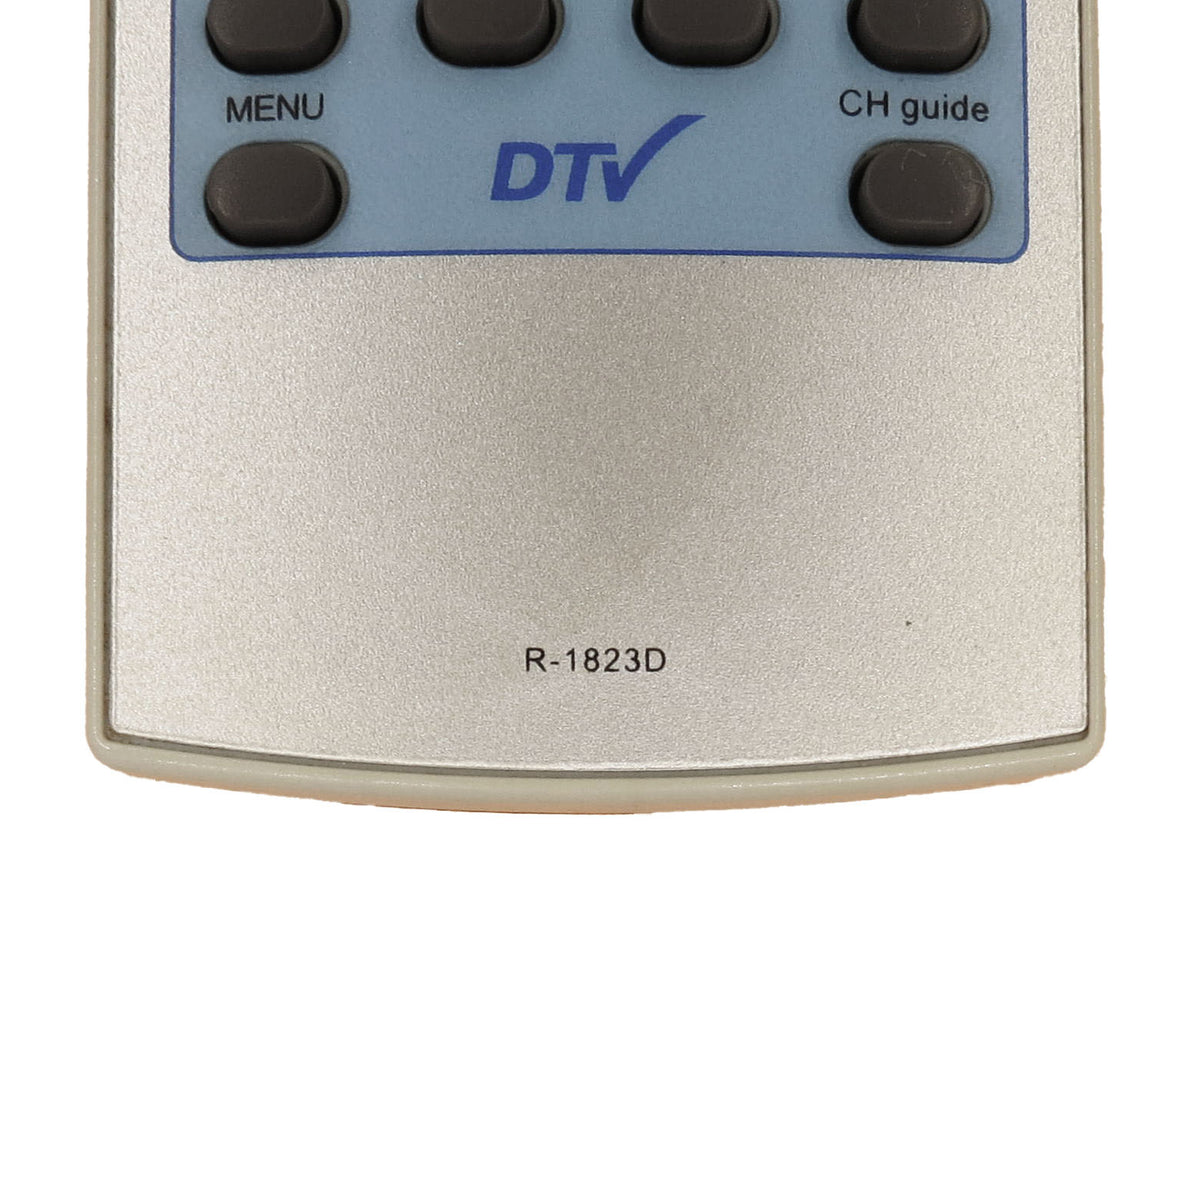 Original T4HU1804/32K Voice SFR Decoder Remote (Ref#C-868)